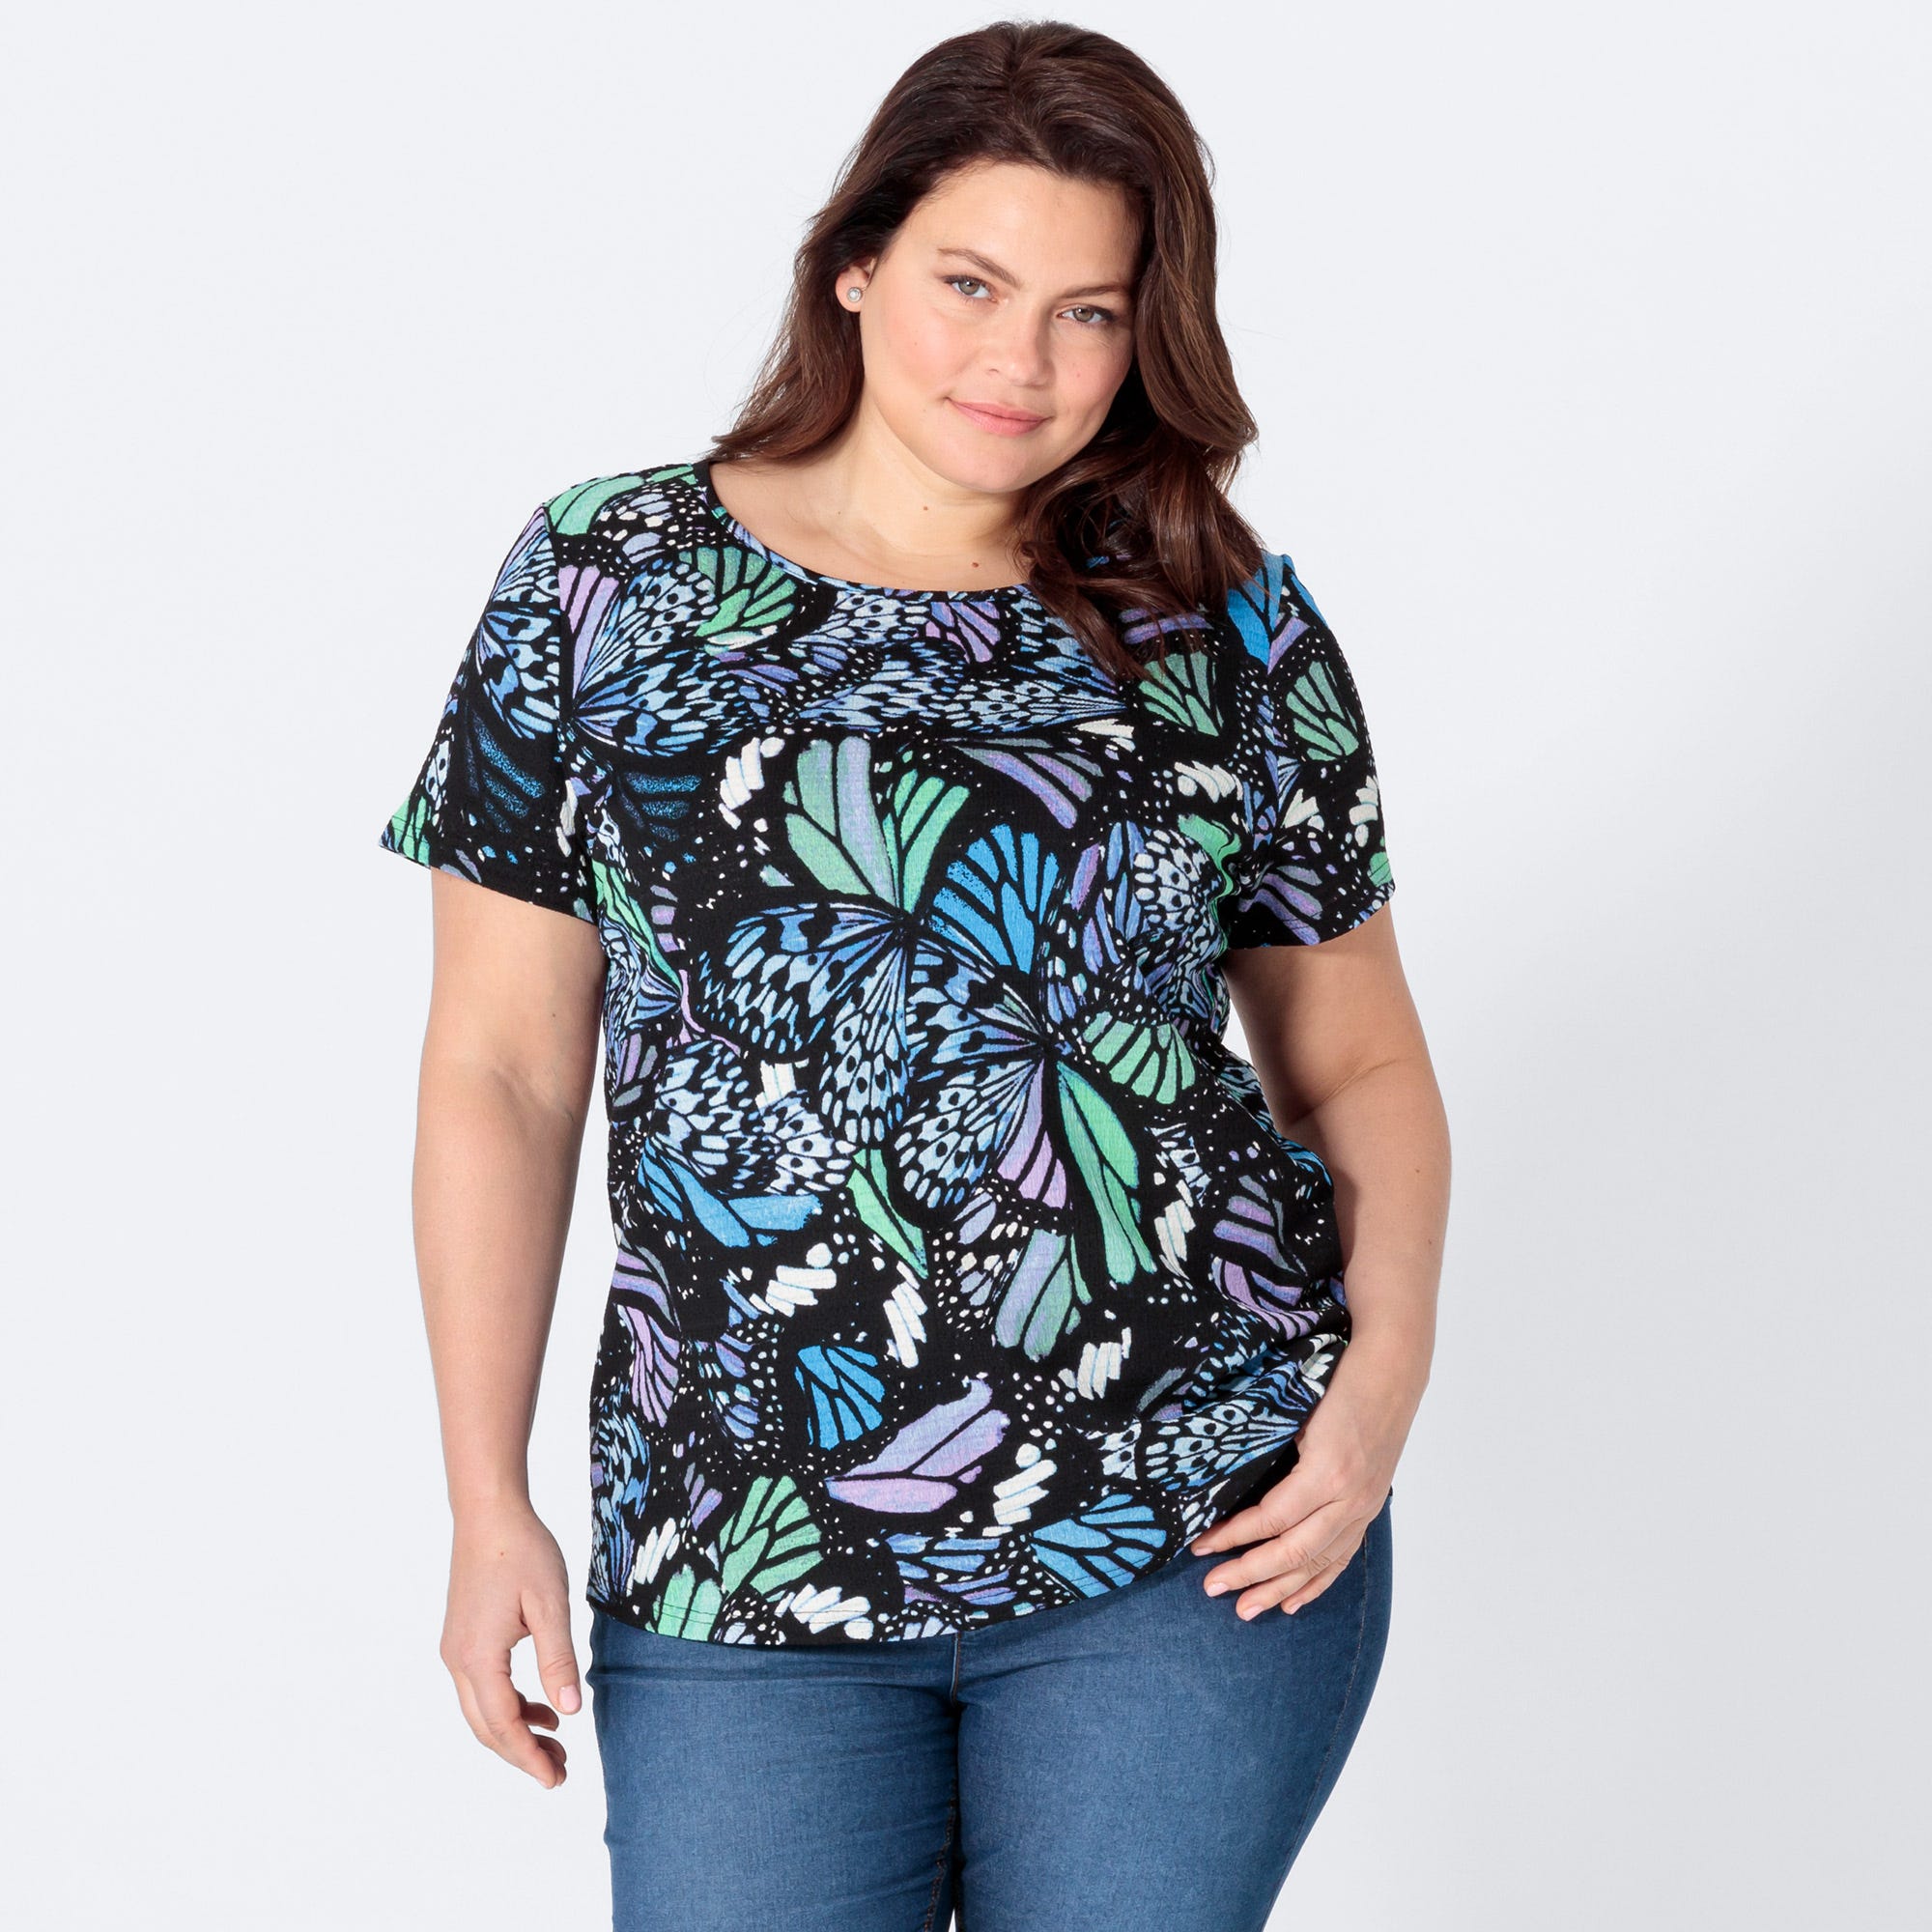 Damen-T-Shirt mit hübschem Muster, große Größen